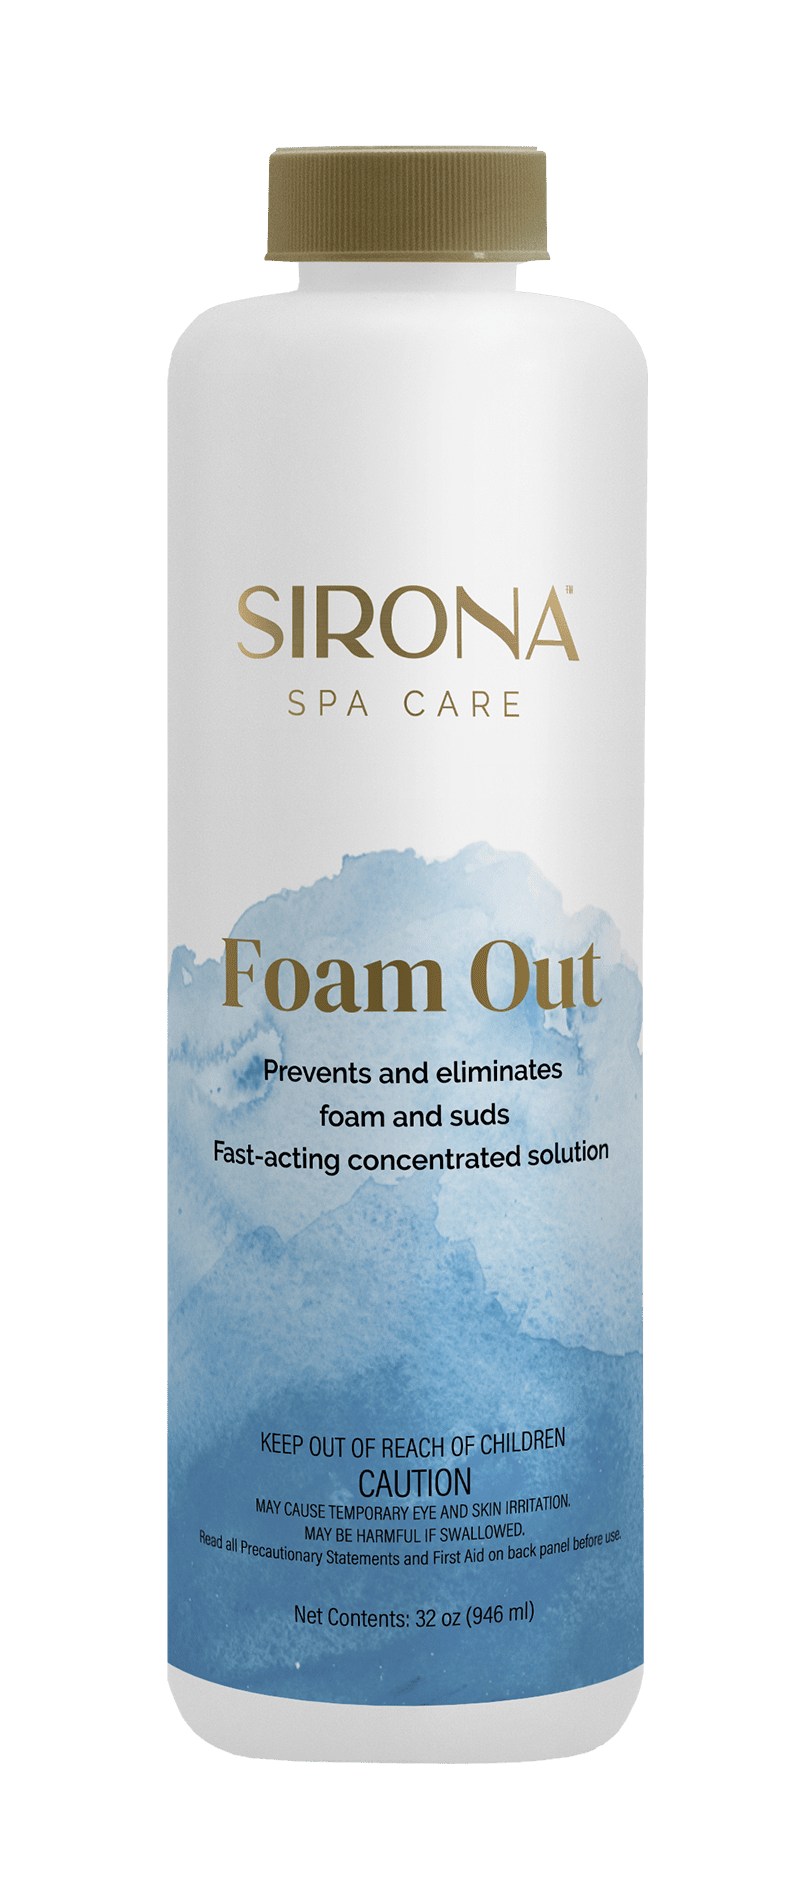 Sirona Spa Care Foam Out